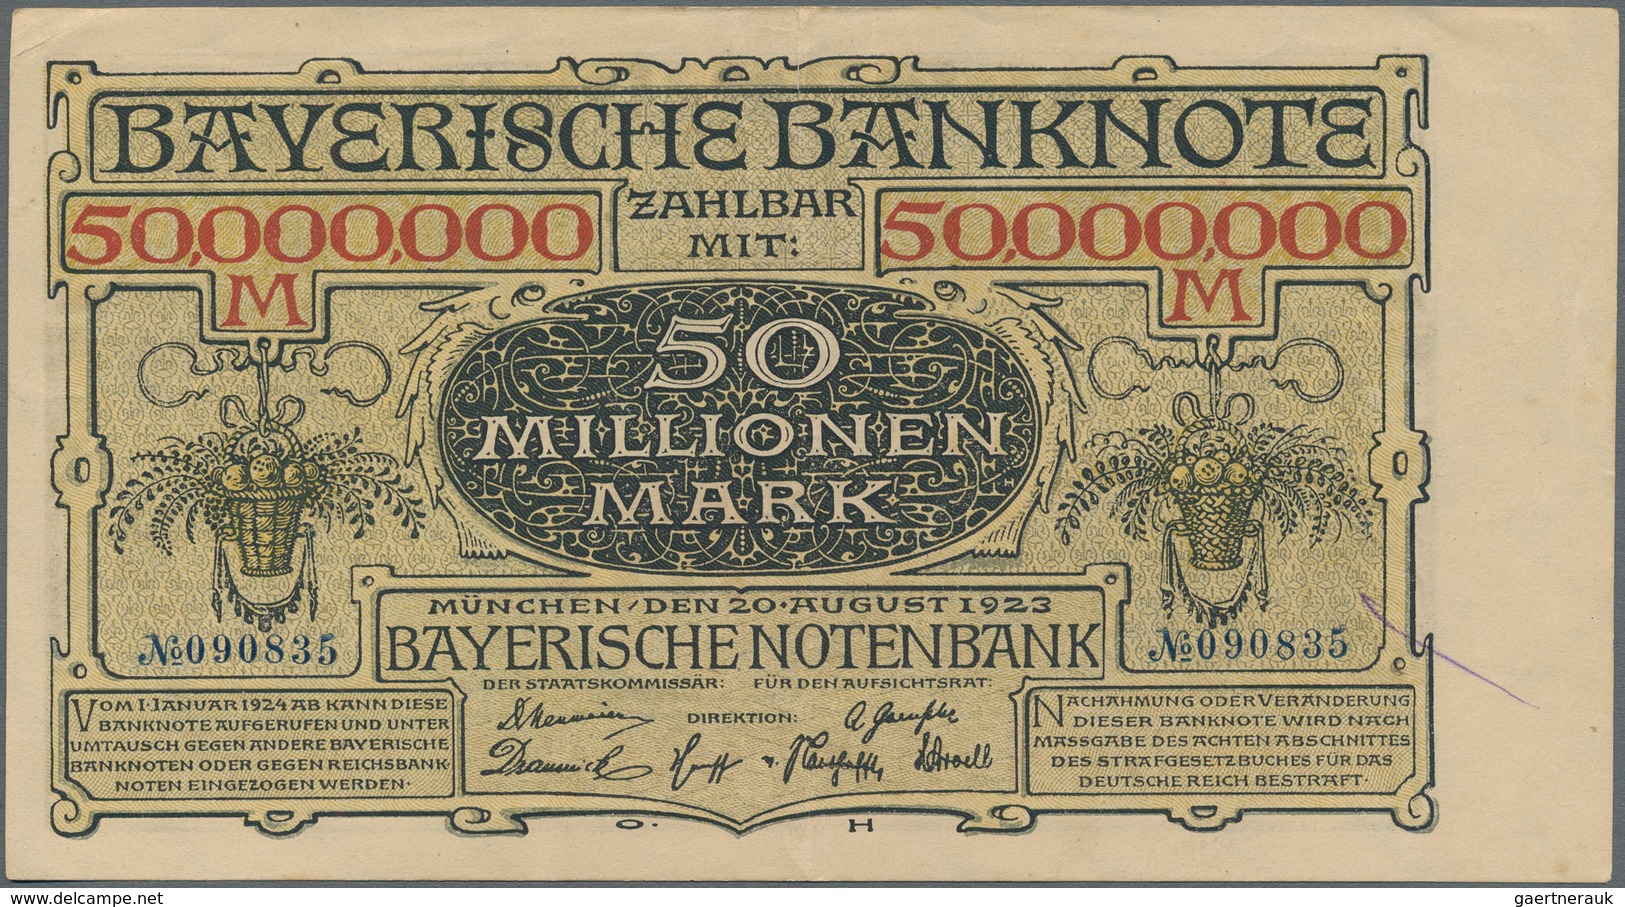 Deutschland - Länderscheine: Sehr schönes Lot mit 58 Länderbanknoten und einigen wenigen Notgeldausg